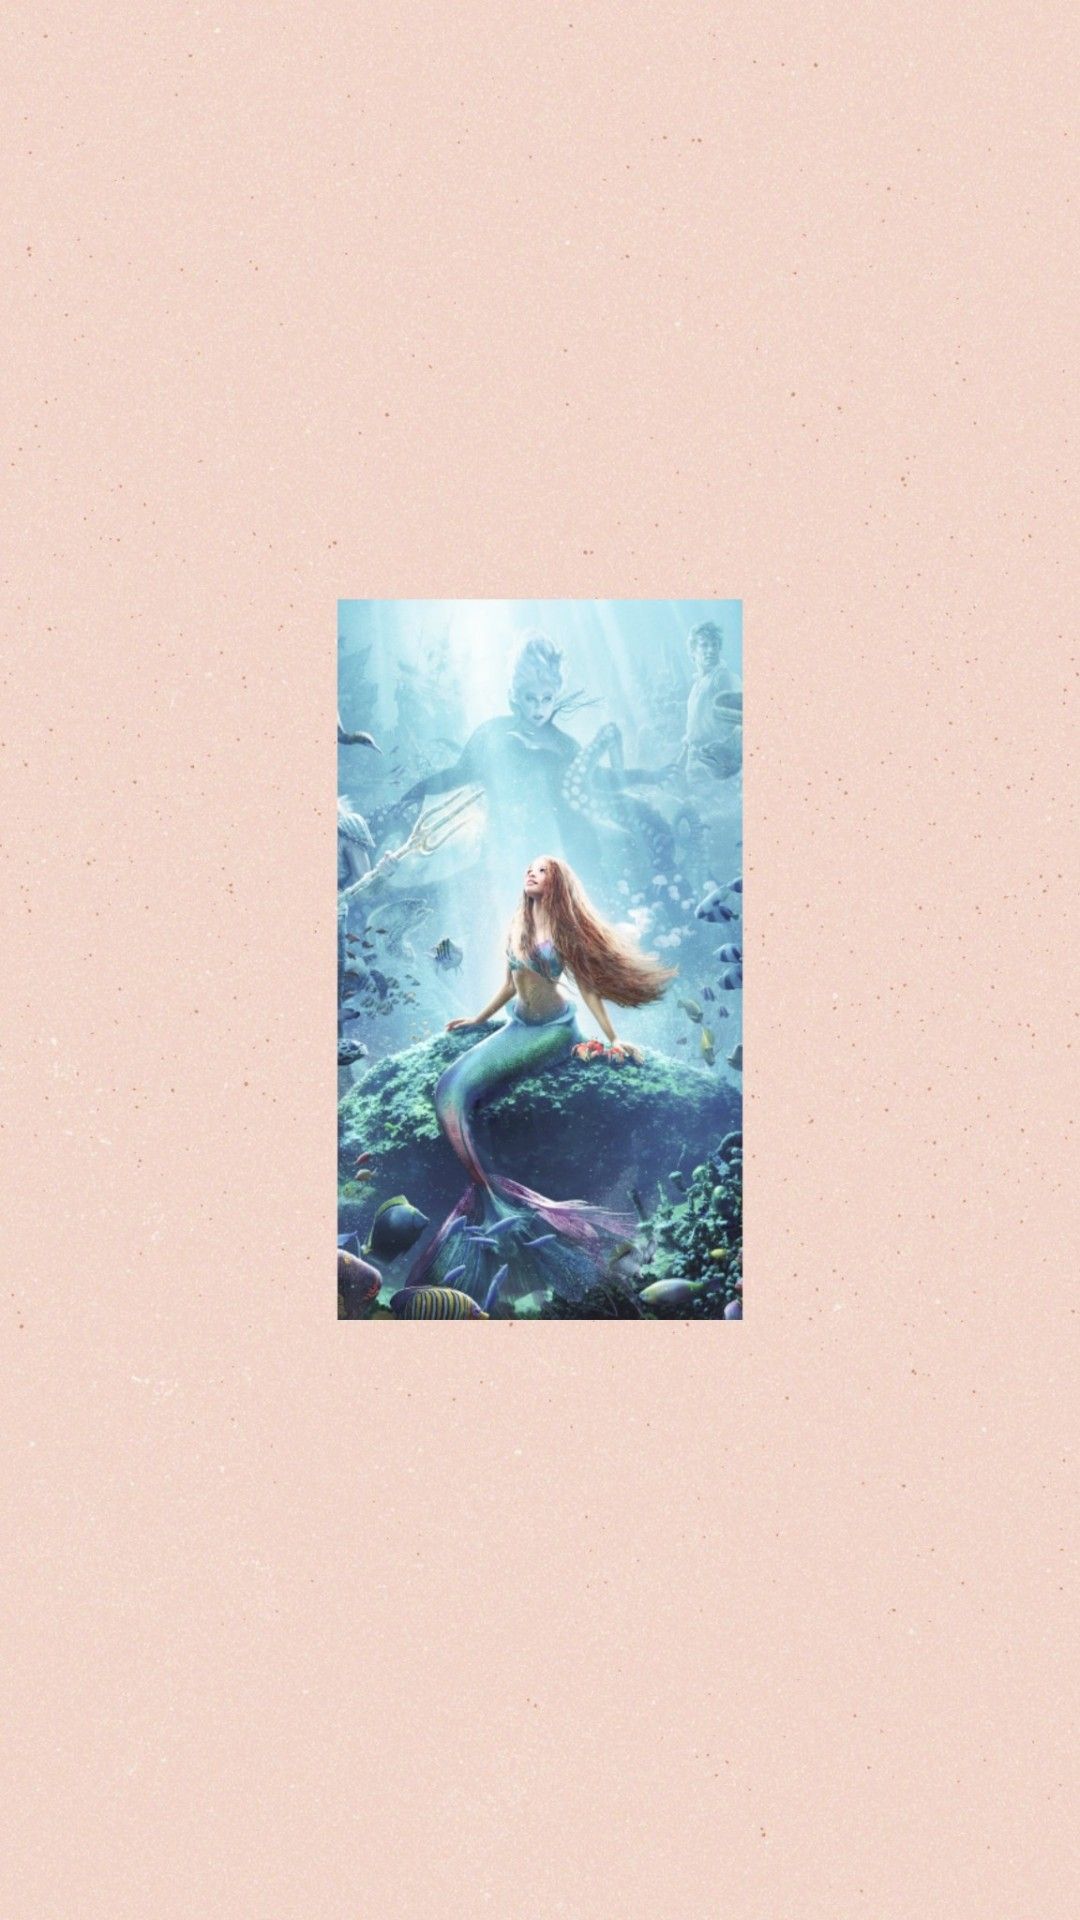 Mermaid wallpaper, wallpaper, background, aesthetic - Mermaid